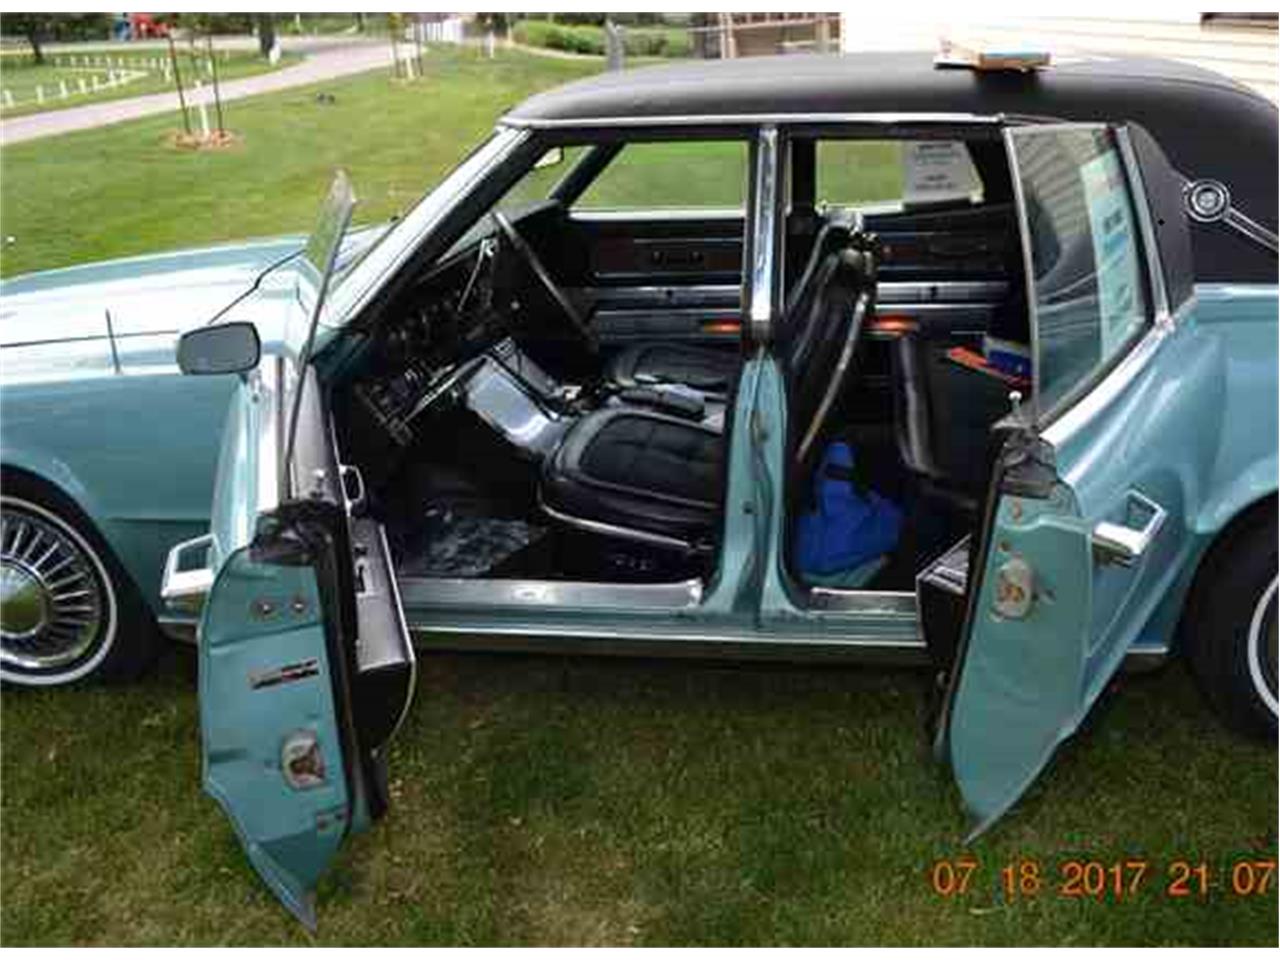 1967 thunderbird rear seat